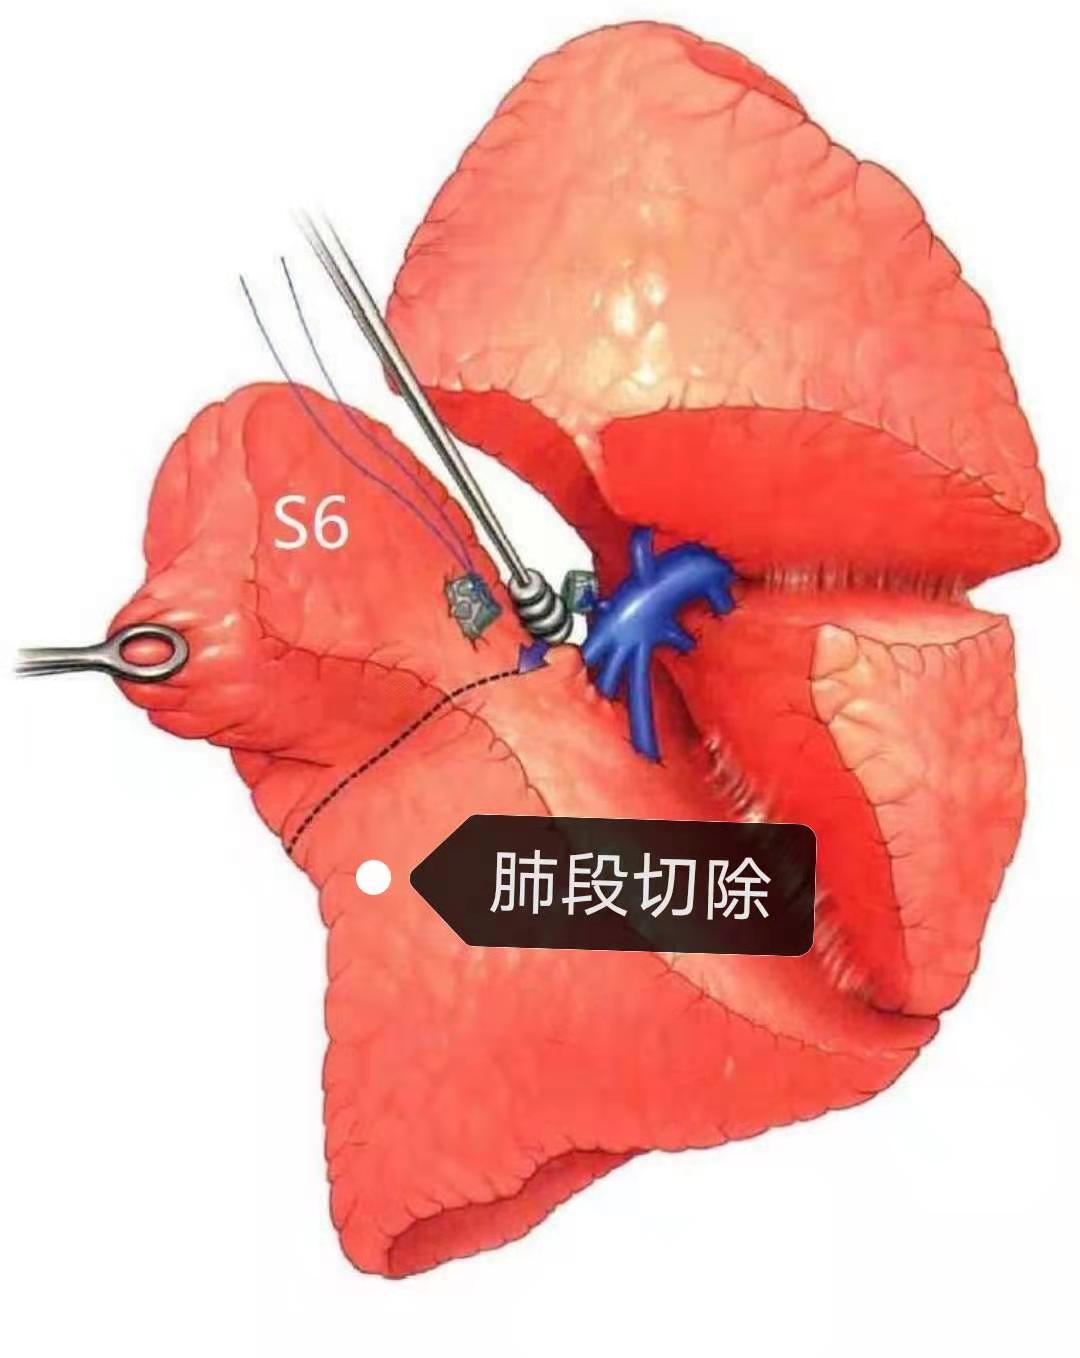 肺部常见手术方式楔形切除肺段切除肺叶切除